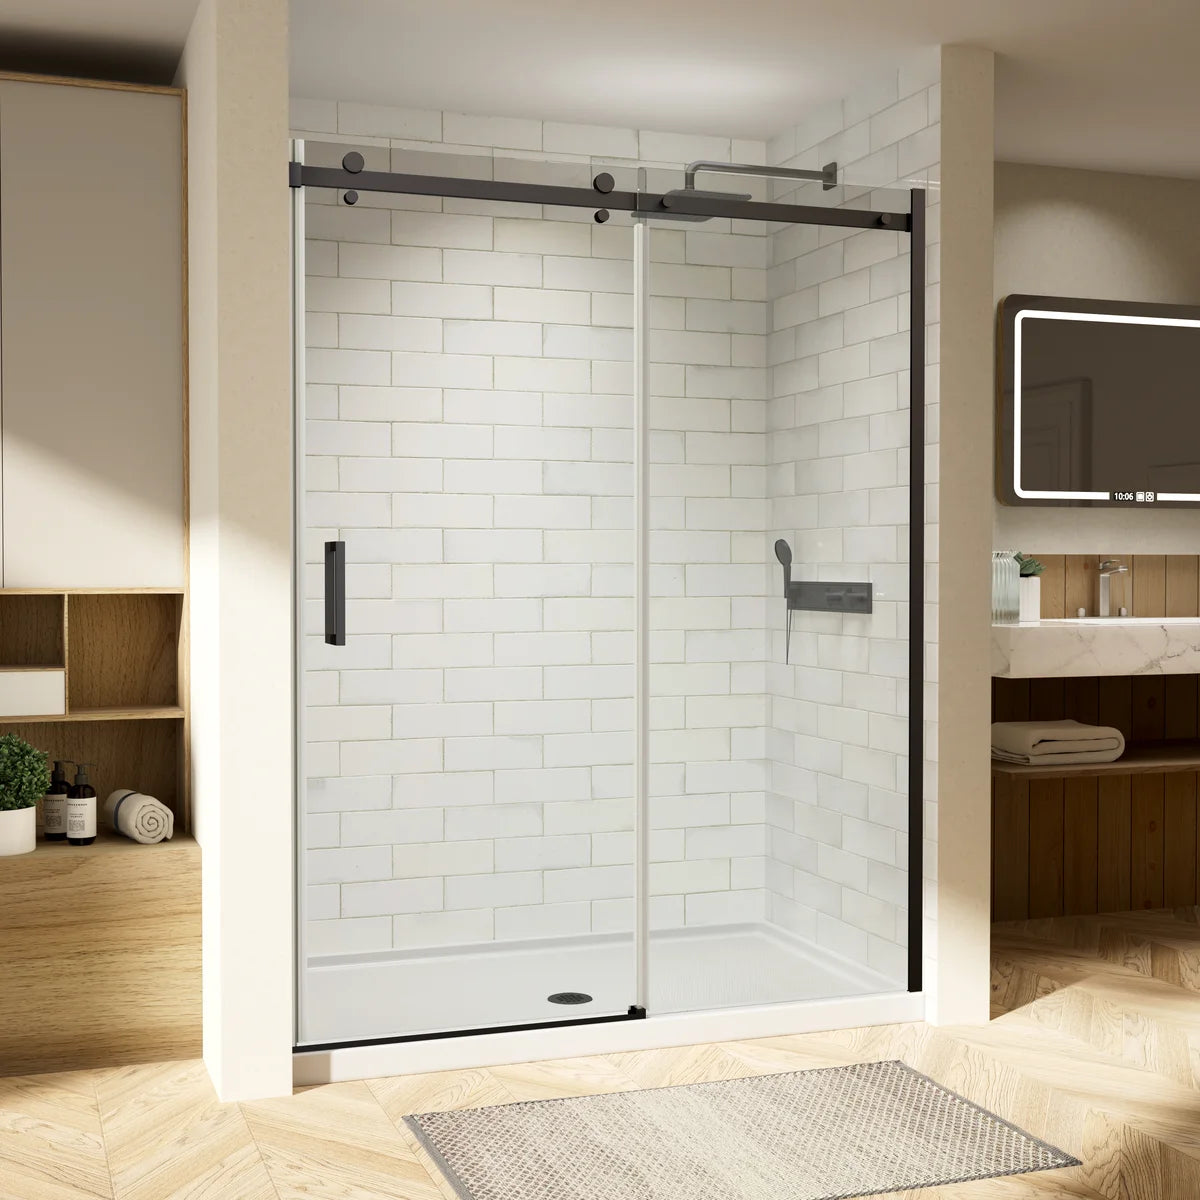 Matte Black Frameless Sliding Shower Glass Doors